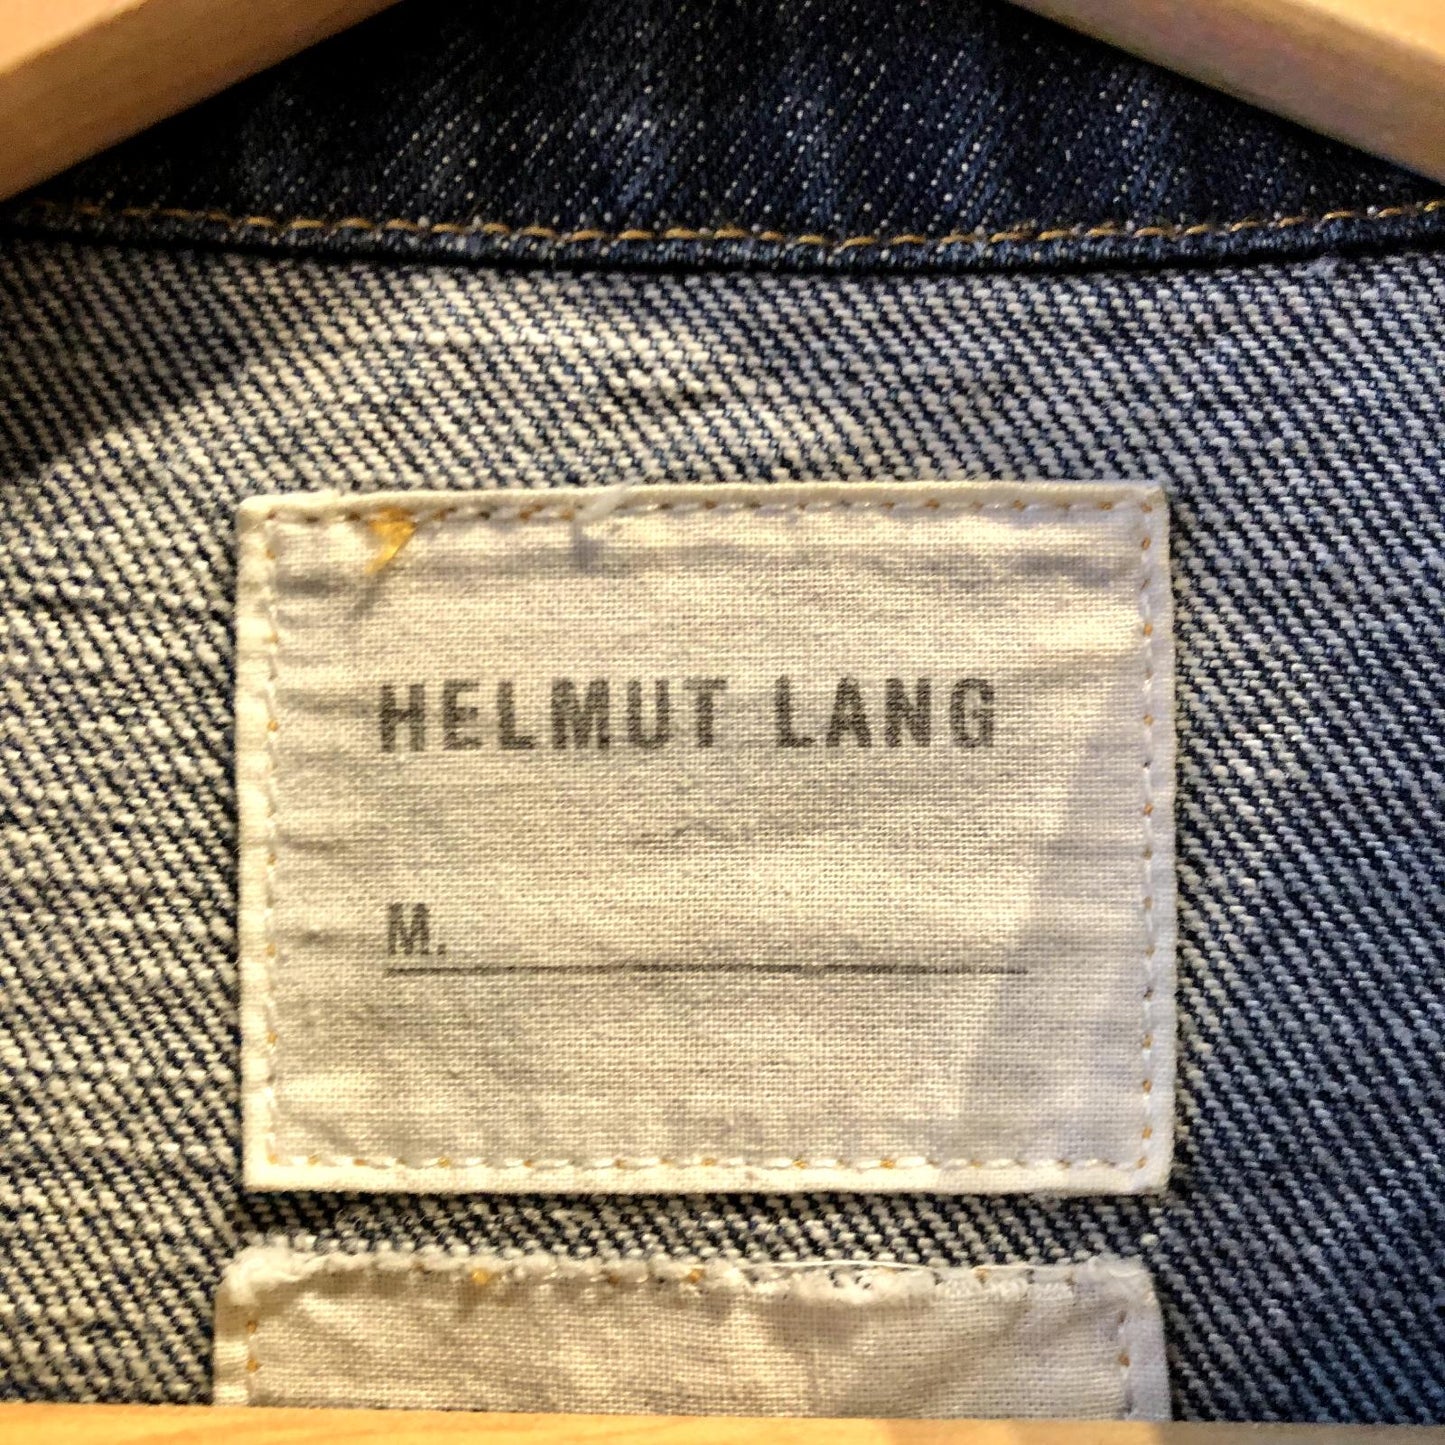 M / 44 - Helmut Lang Dark Wash Denim Button Up Jean Jacket 0721DK